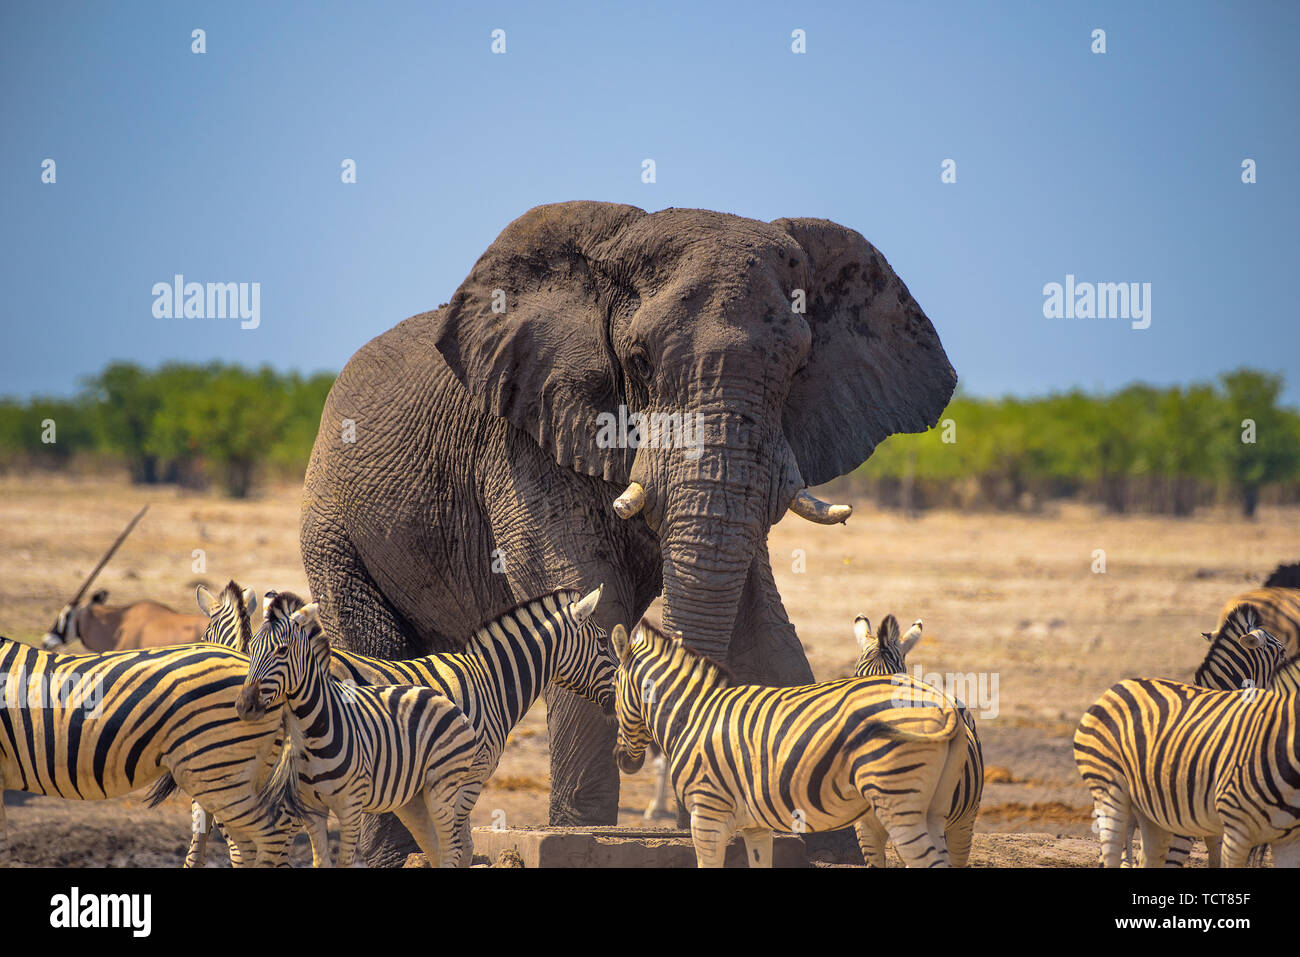 Angry elephant surrounded by zebras in Etosha National Park, Namibia Stock Photo